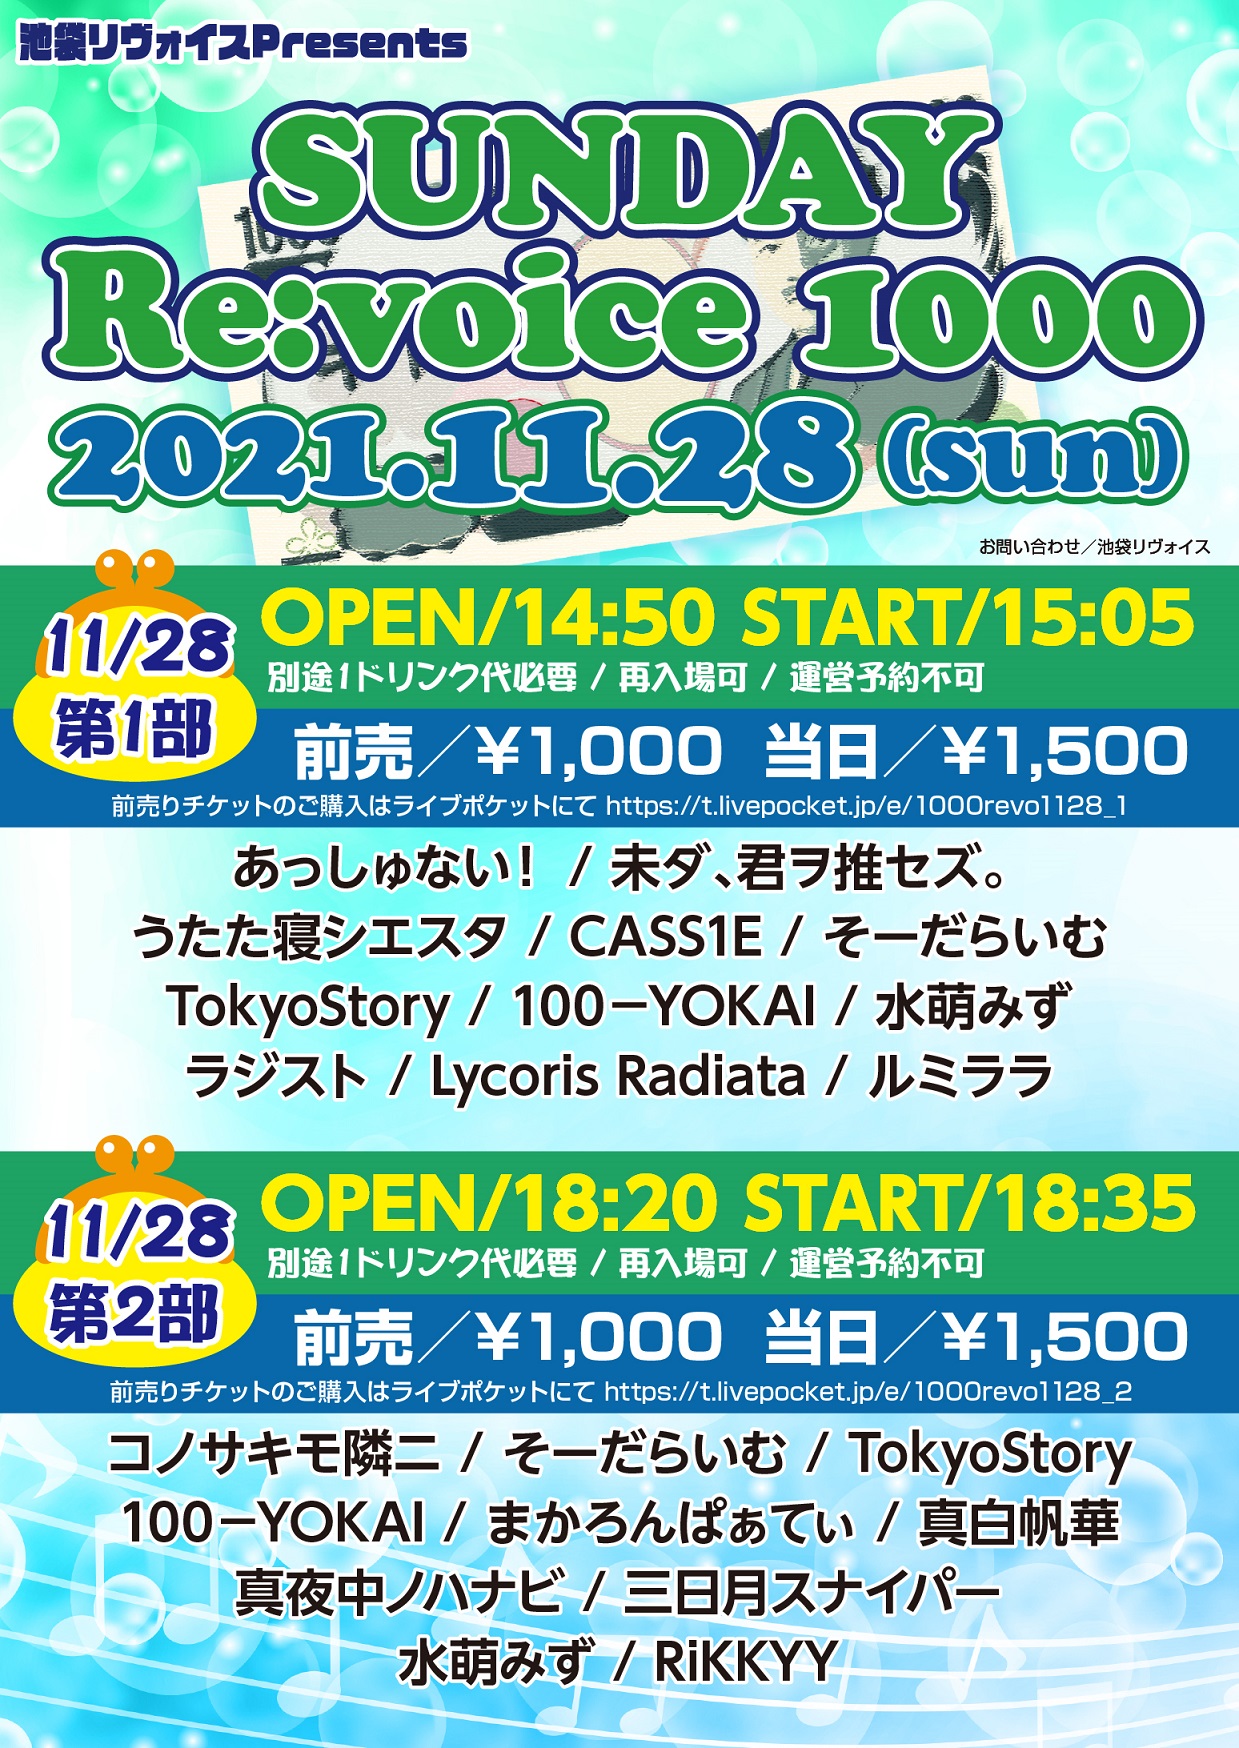 【第一部】SUNDAY Re:voice 1000